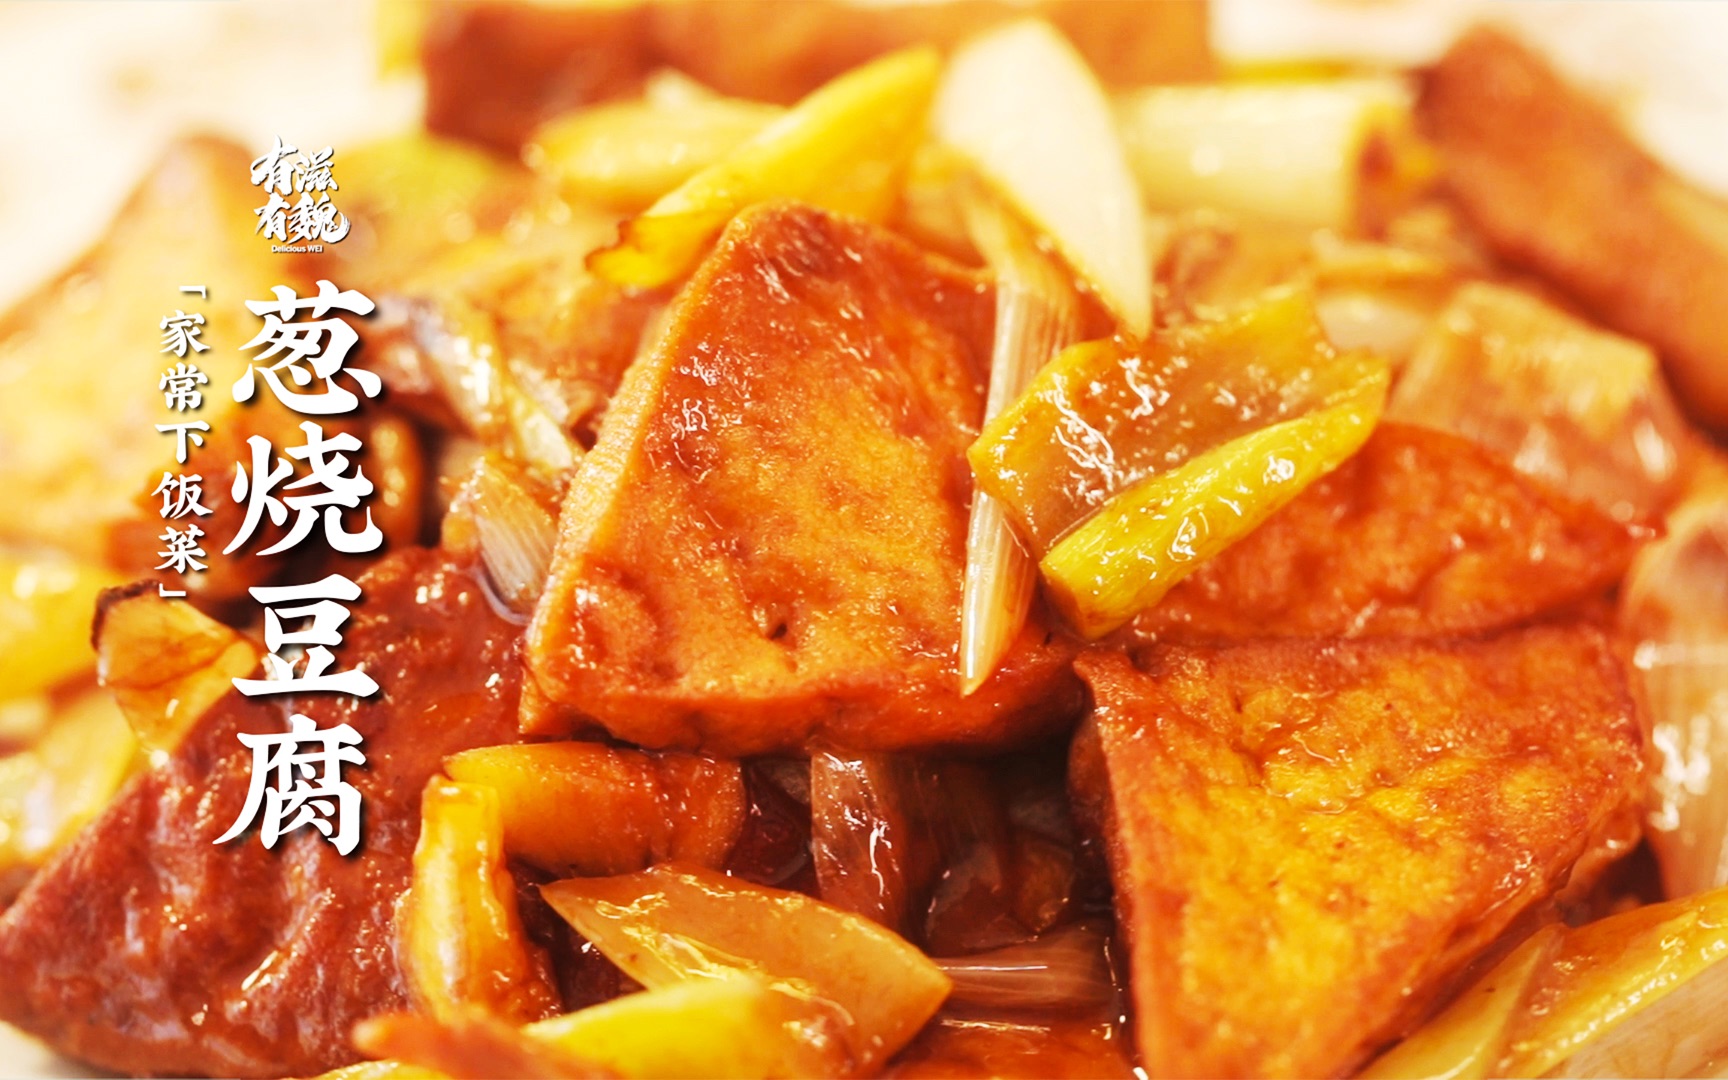 赏味云南美食文化节登陆京城 带你了解云南美食和高端度假圣地